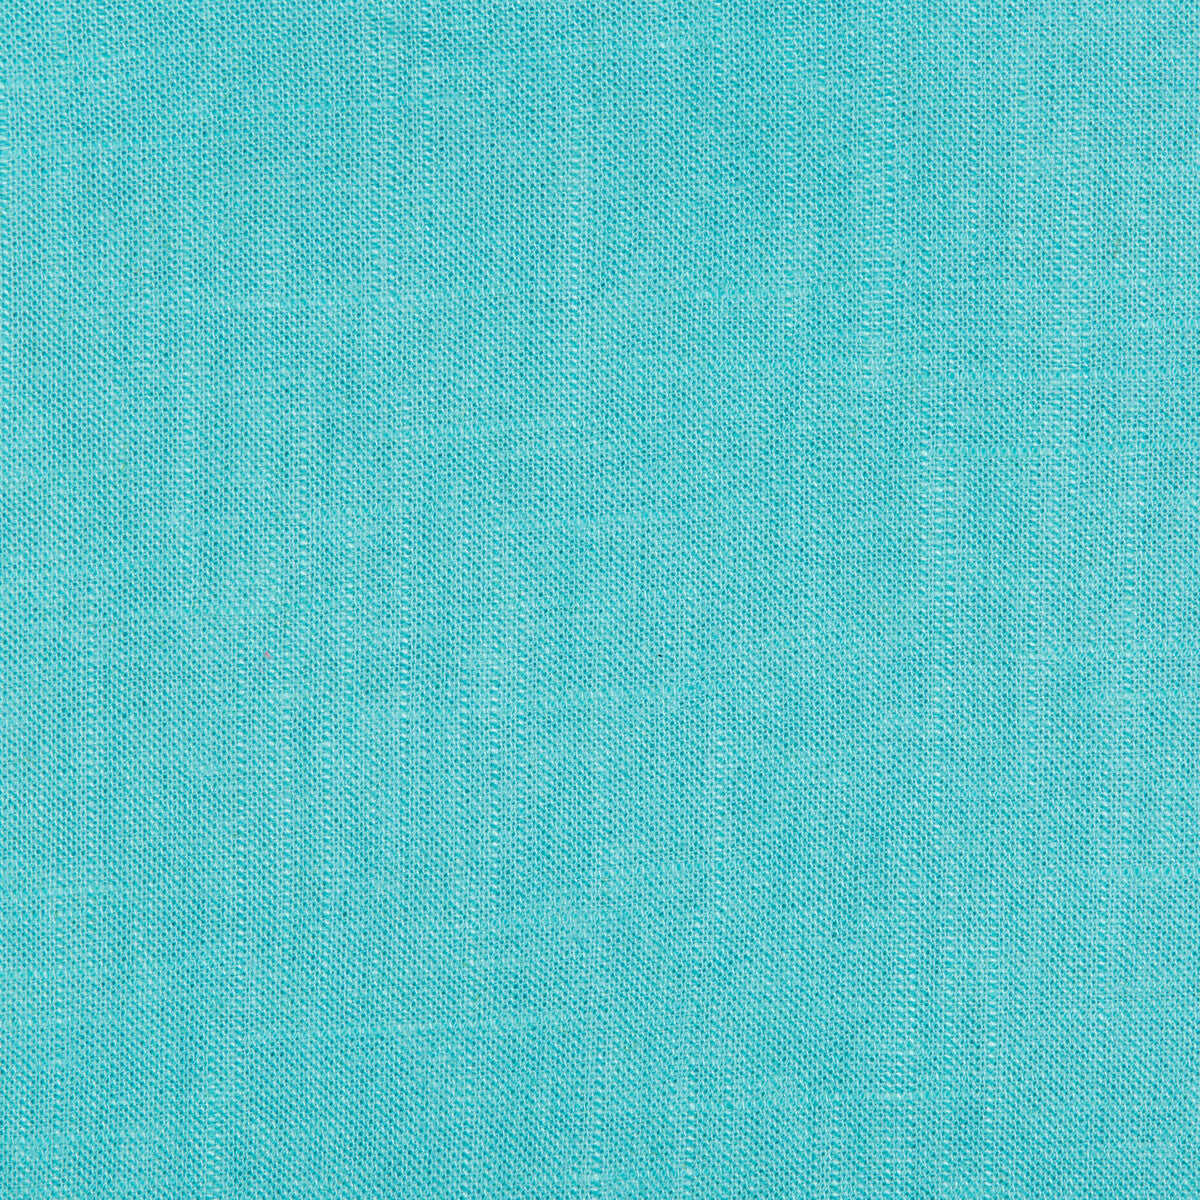 Kravet Basics fabric in 24573-3535 color - pattern 24573.3535.0 - by Kravet Basics